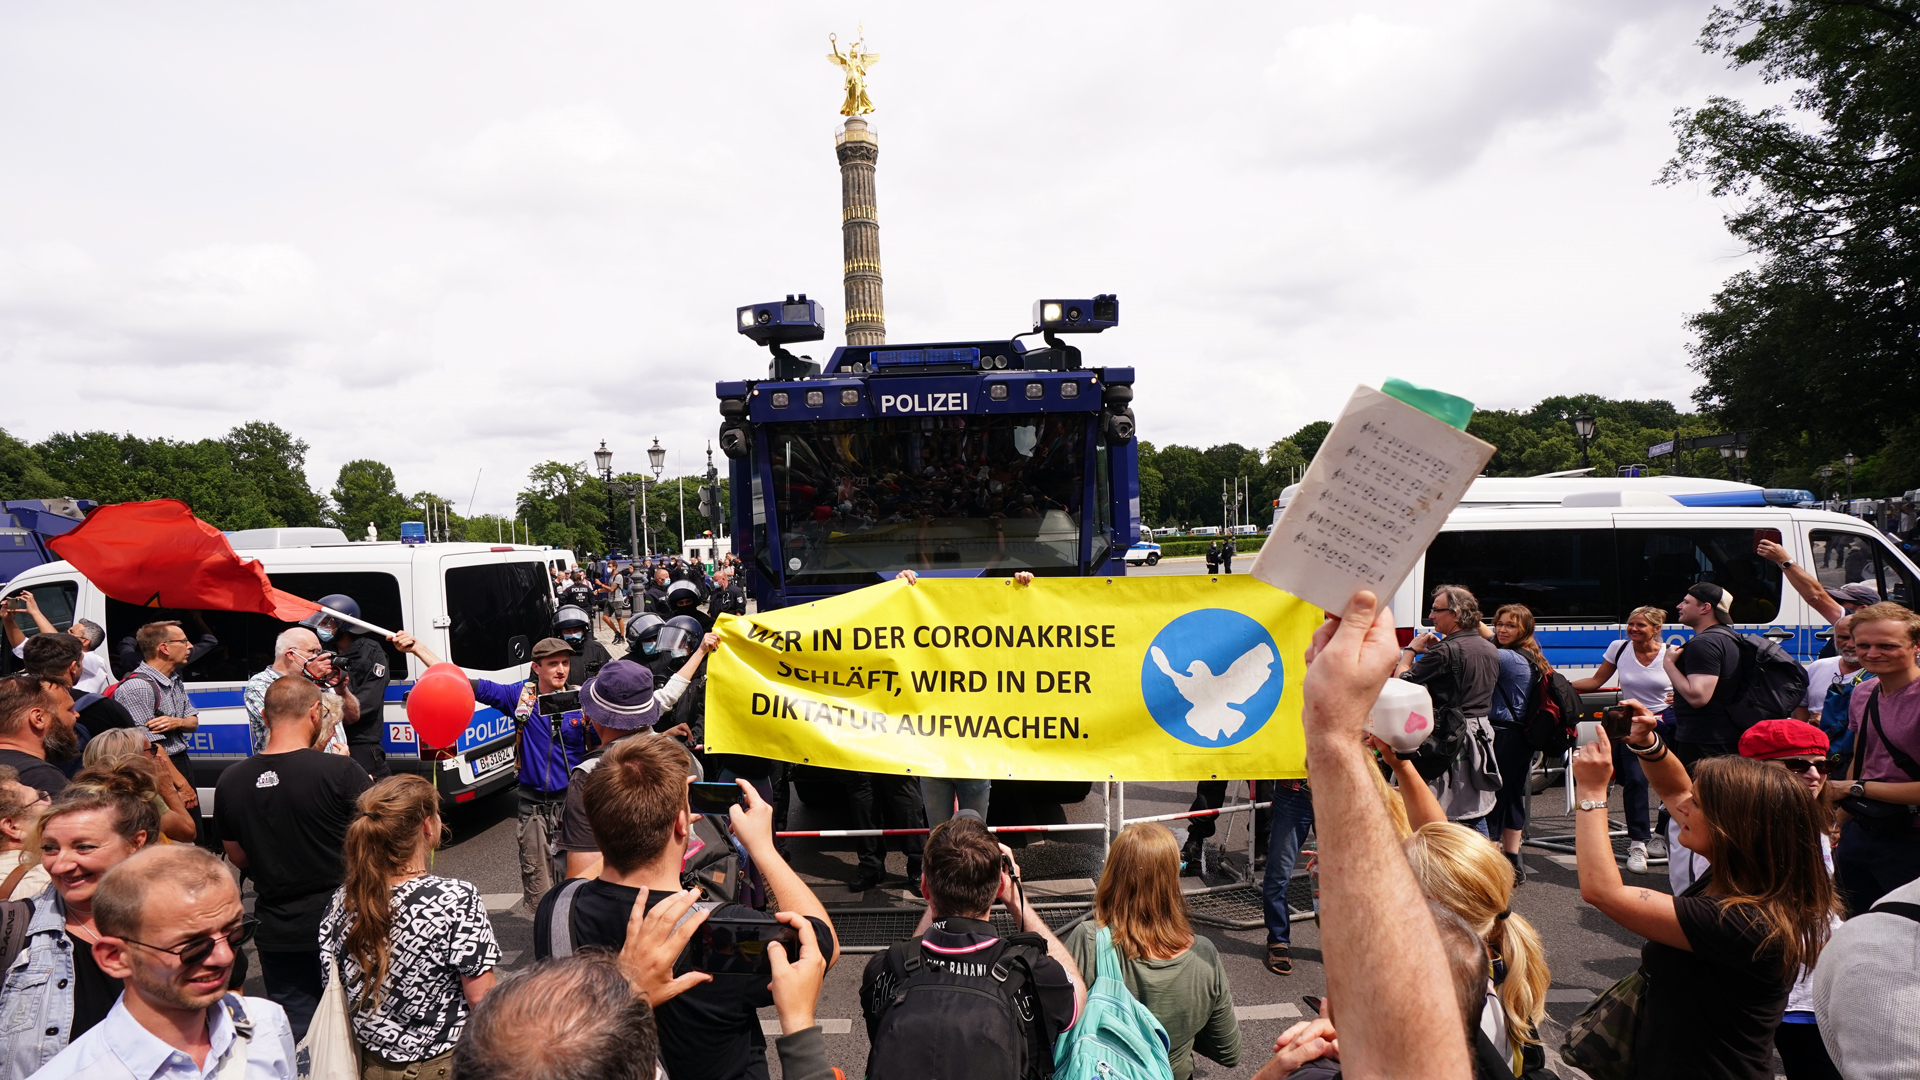 Protestan contra restricciones contra el COVID-19 en Berlín, Alemania